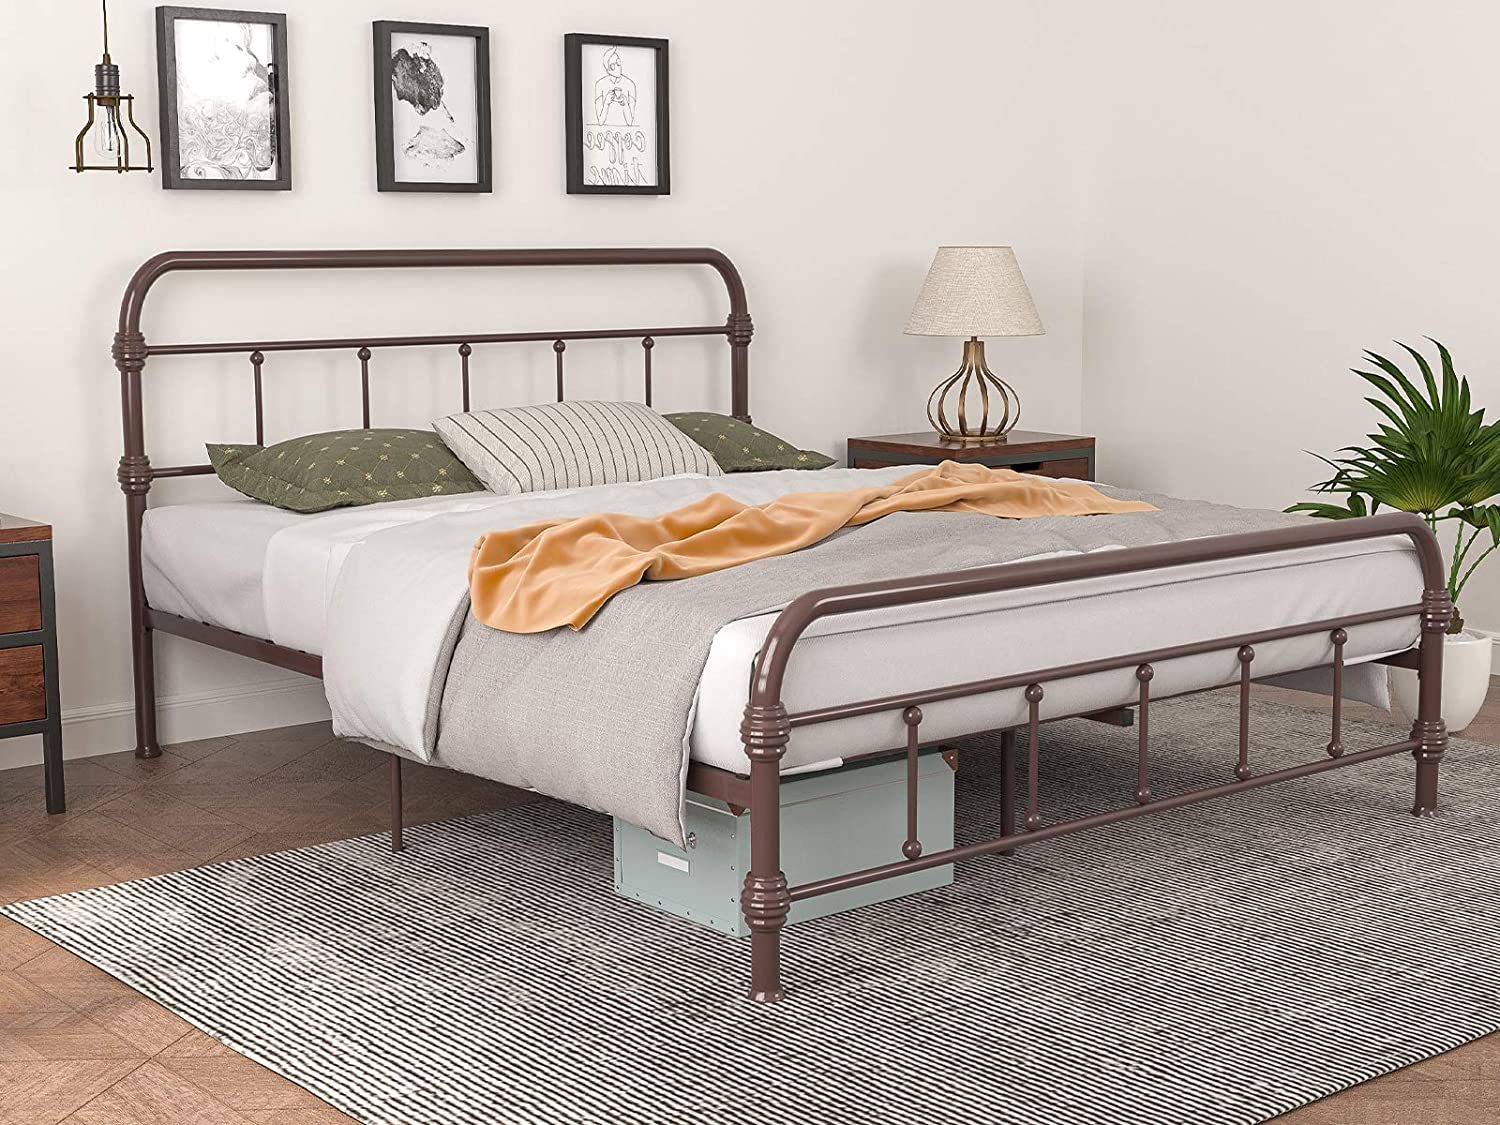 Queen size Metal Bed Frame Steel Slat Platform Headboard Bedroom Antique Brown 